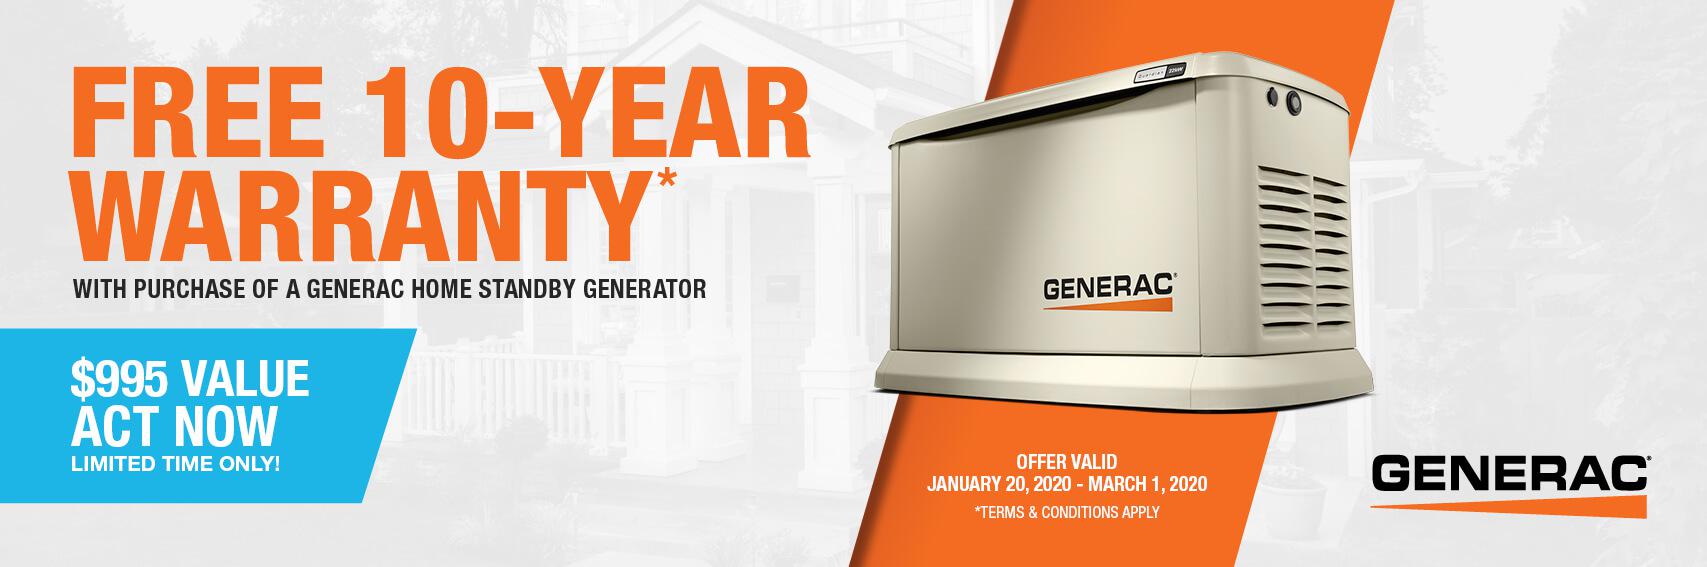 Homestandby Generator Deal | Warranty Offer | Generac Dealer | Manalapan, NJ